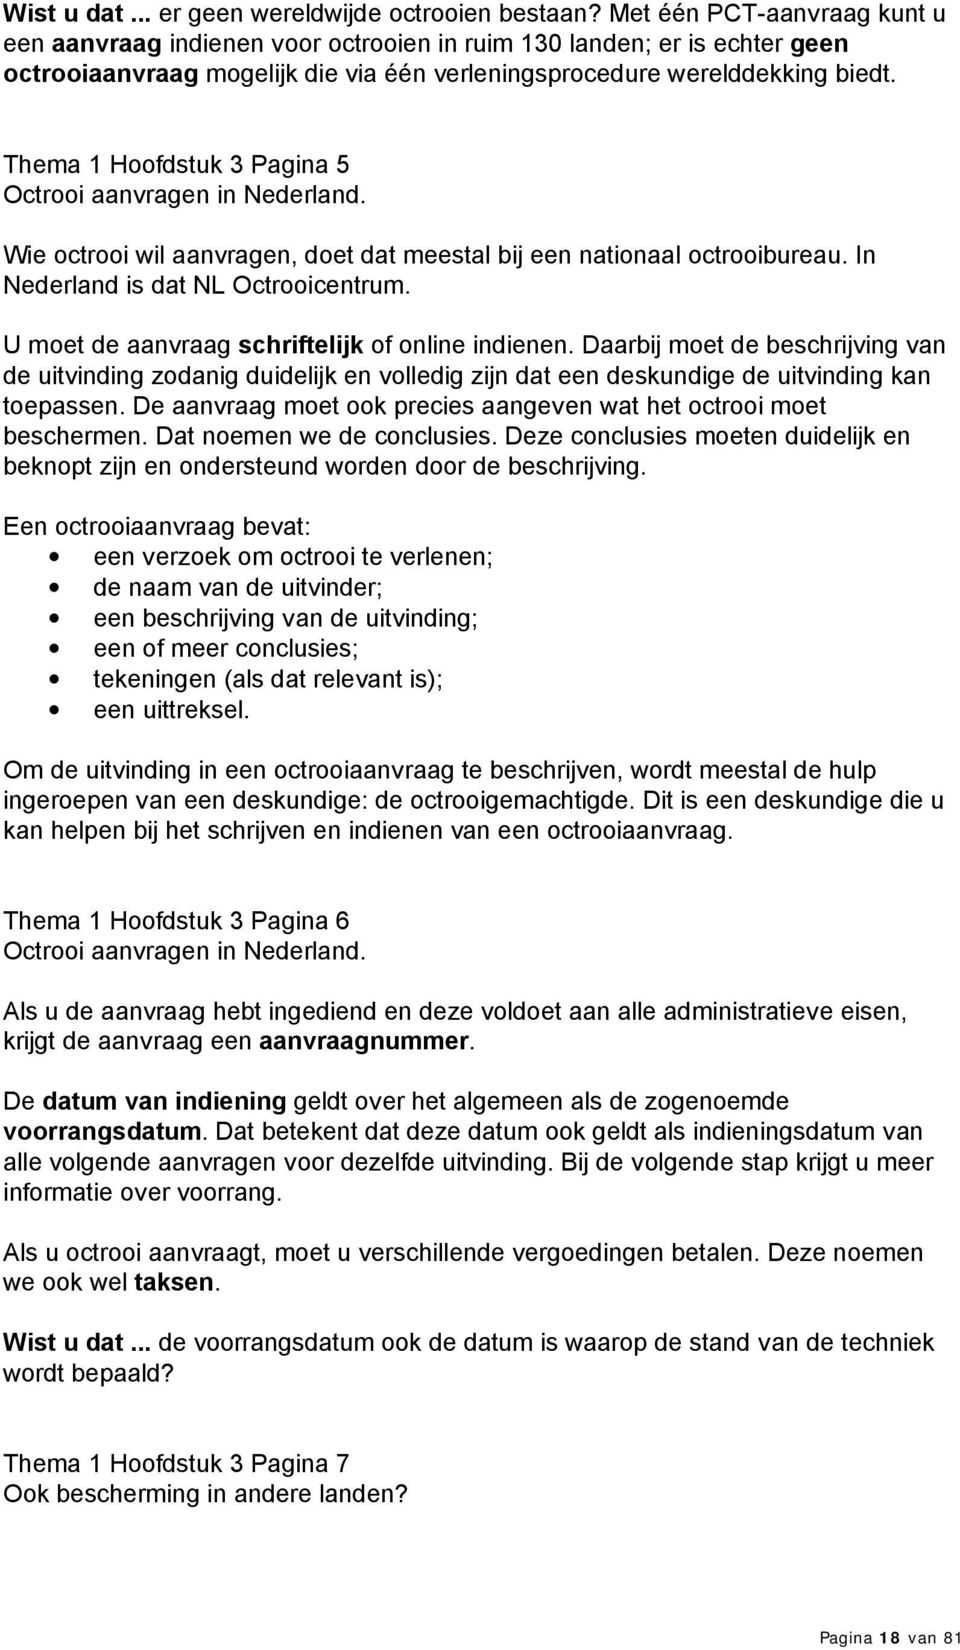 Thema 1 Hoofdstuk 3 Pagina 5 Octrooi aanvragen in Nederland. Wie octrooi wil aanvragen, doet dat meestal bij een nationaal octrooibureau. In Nederland is dat NL Octrooicentrum.